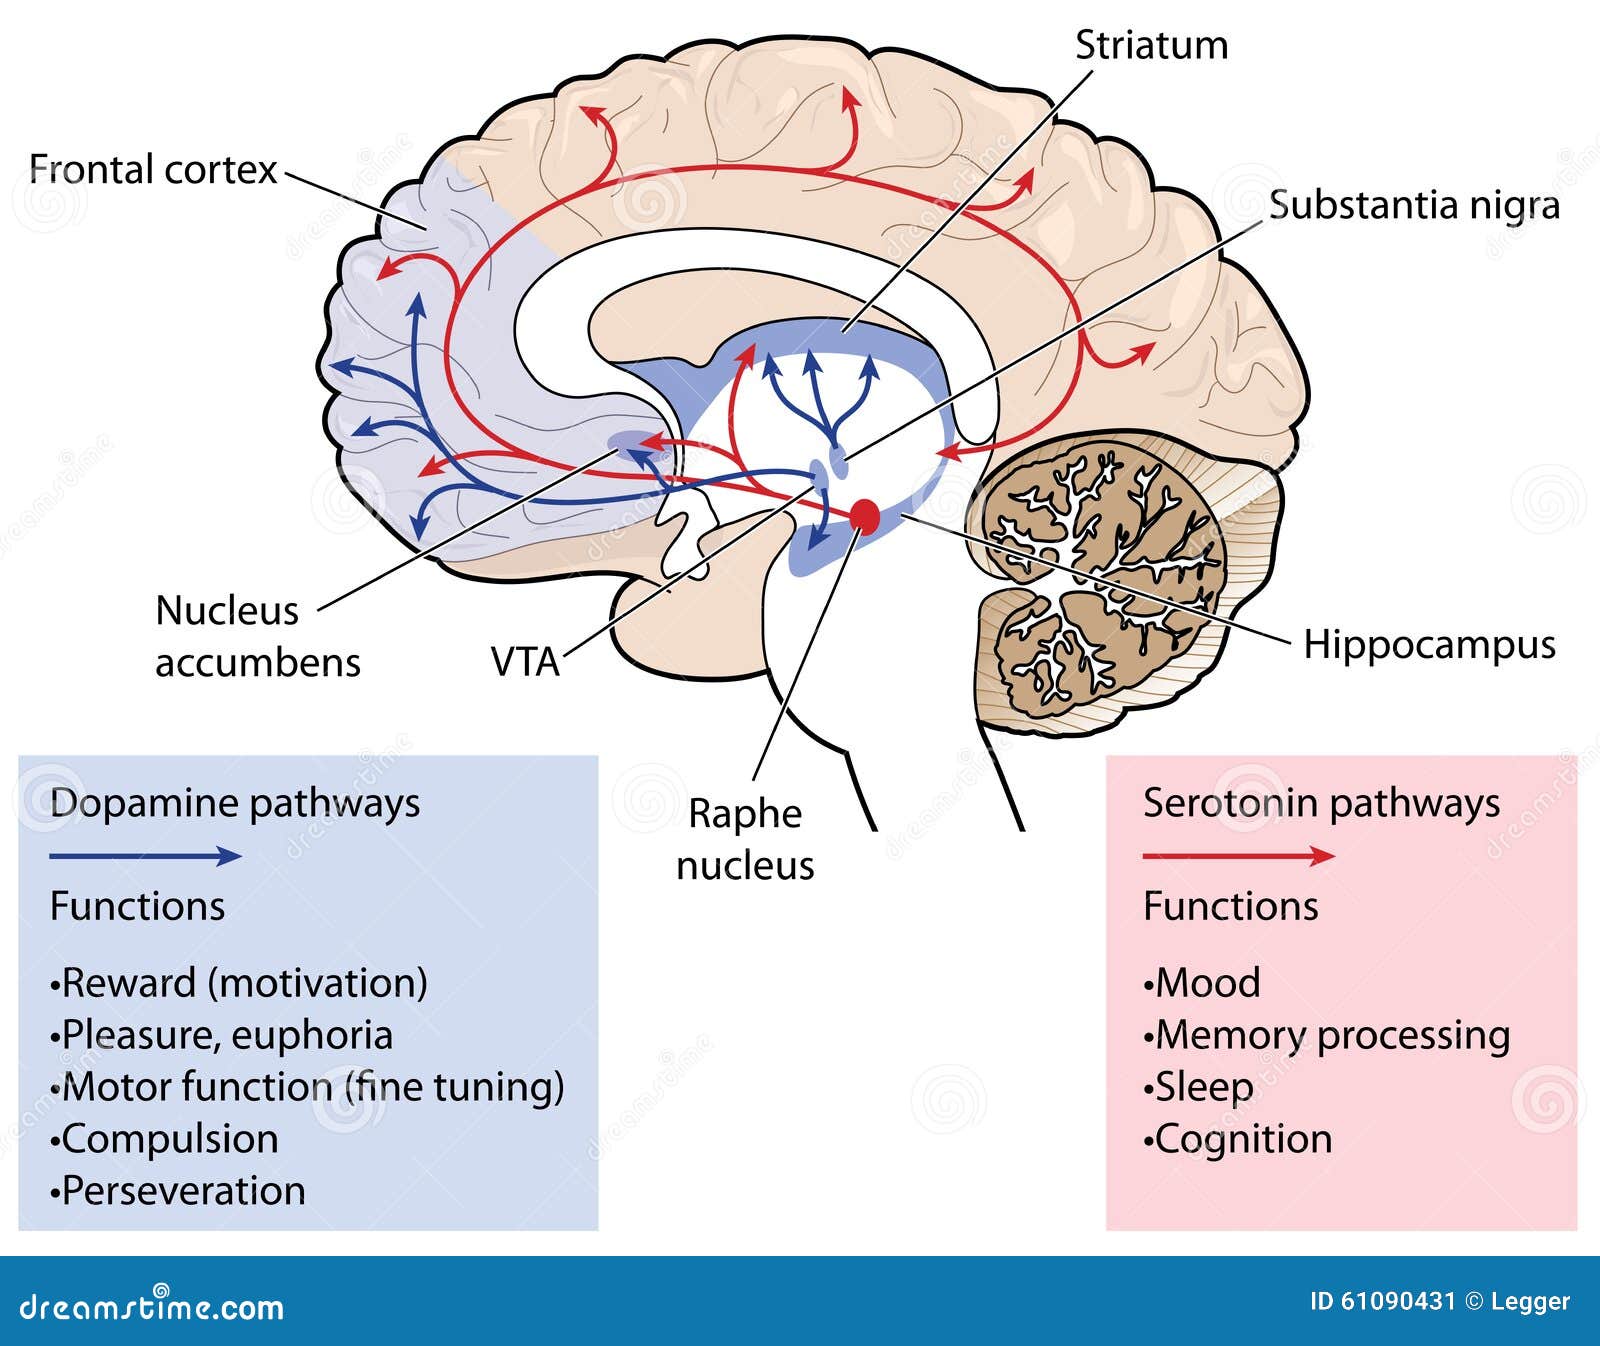 los-caminos-de-la-dopamina-y-de-la-serotonina-en-el-cerebro-61090431.jpg